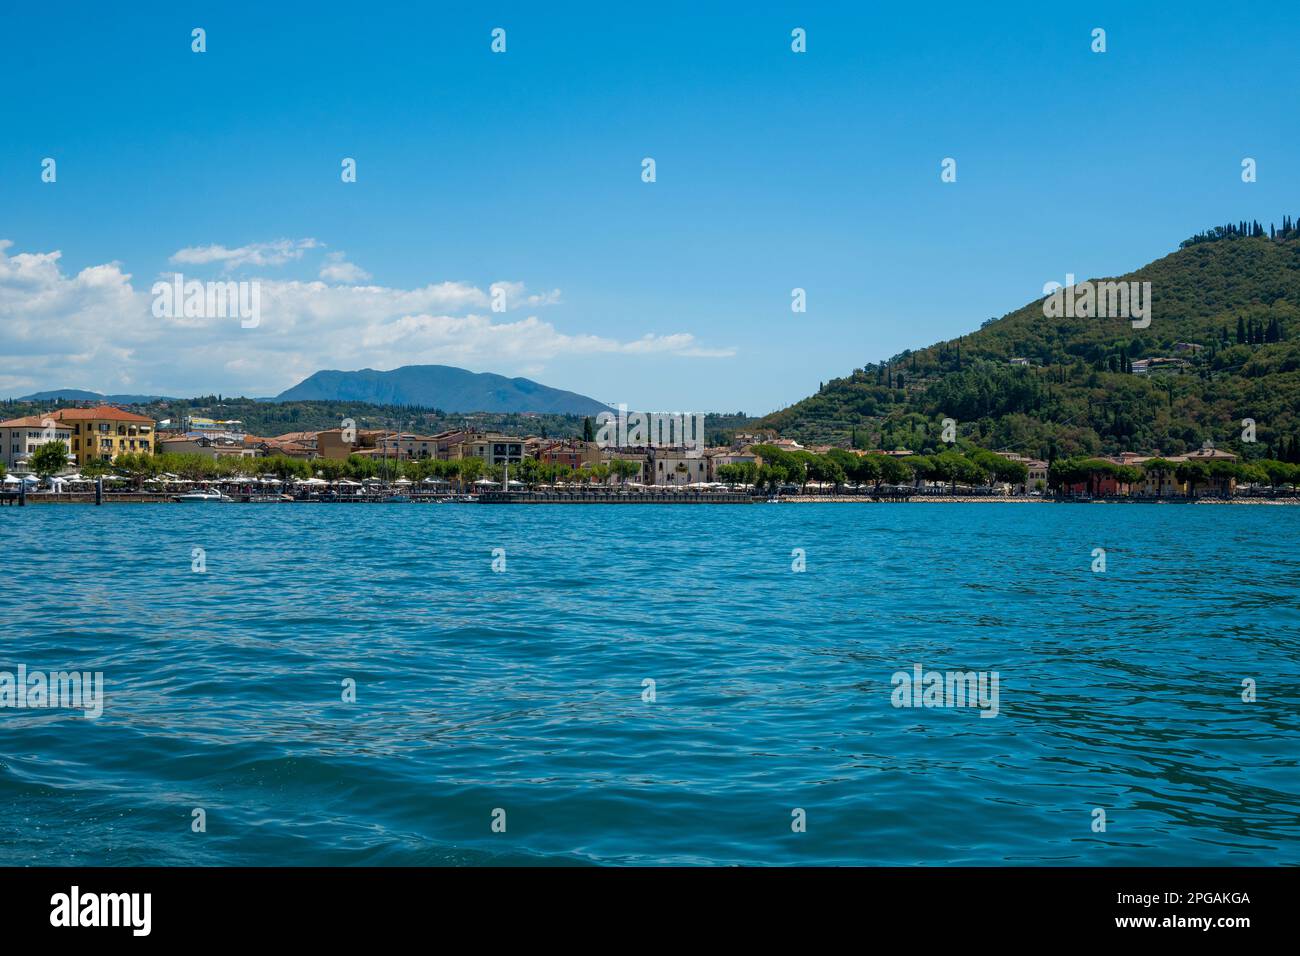 Sirmione ciudad y castillo en el lago de Garda, Italia, en un día brillante de verano Foto de stock